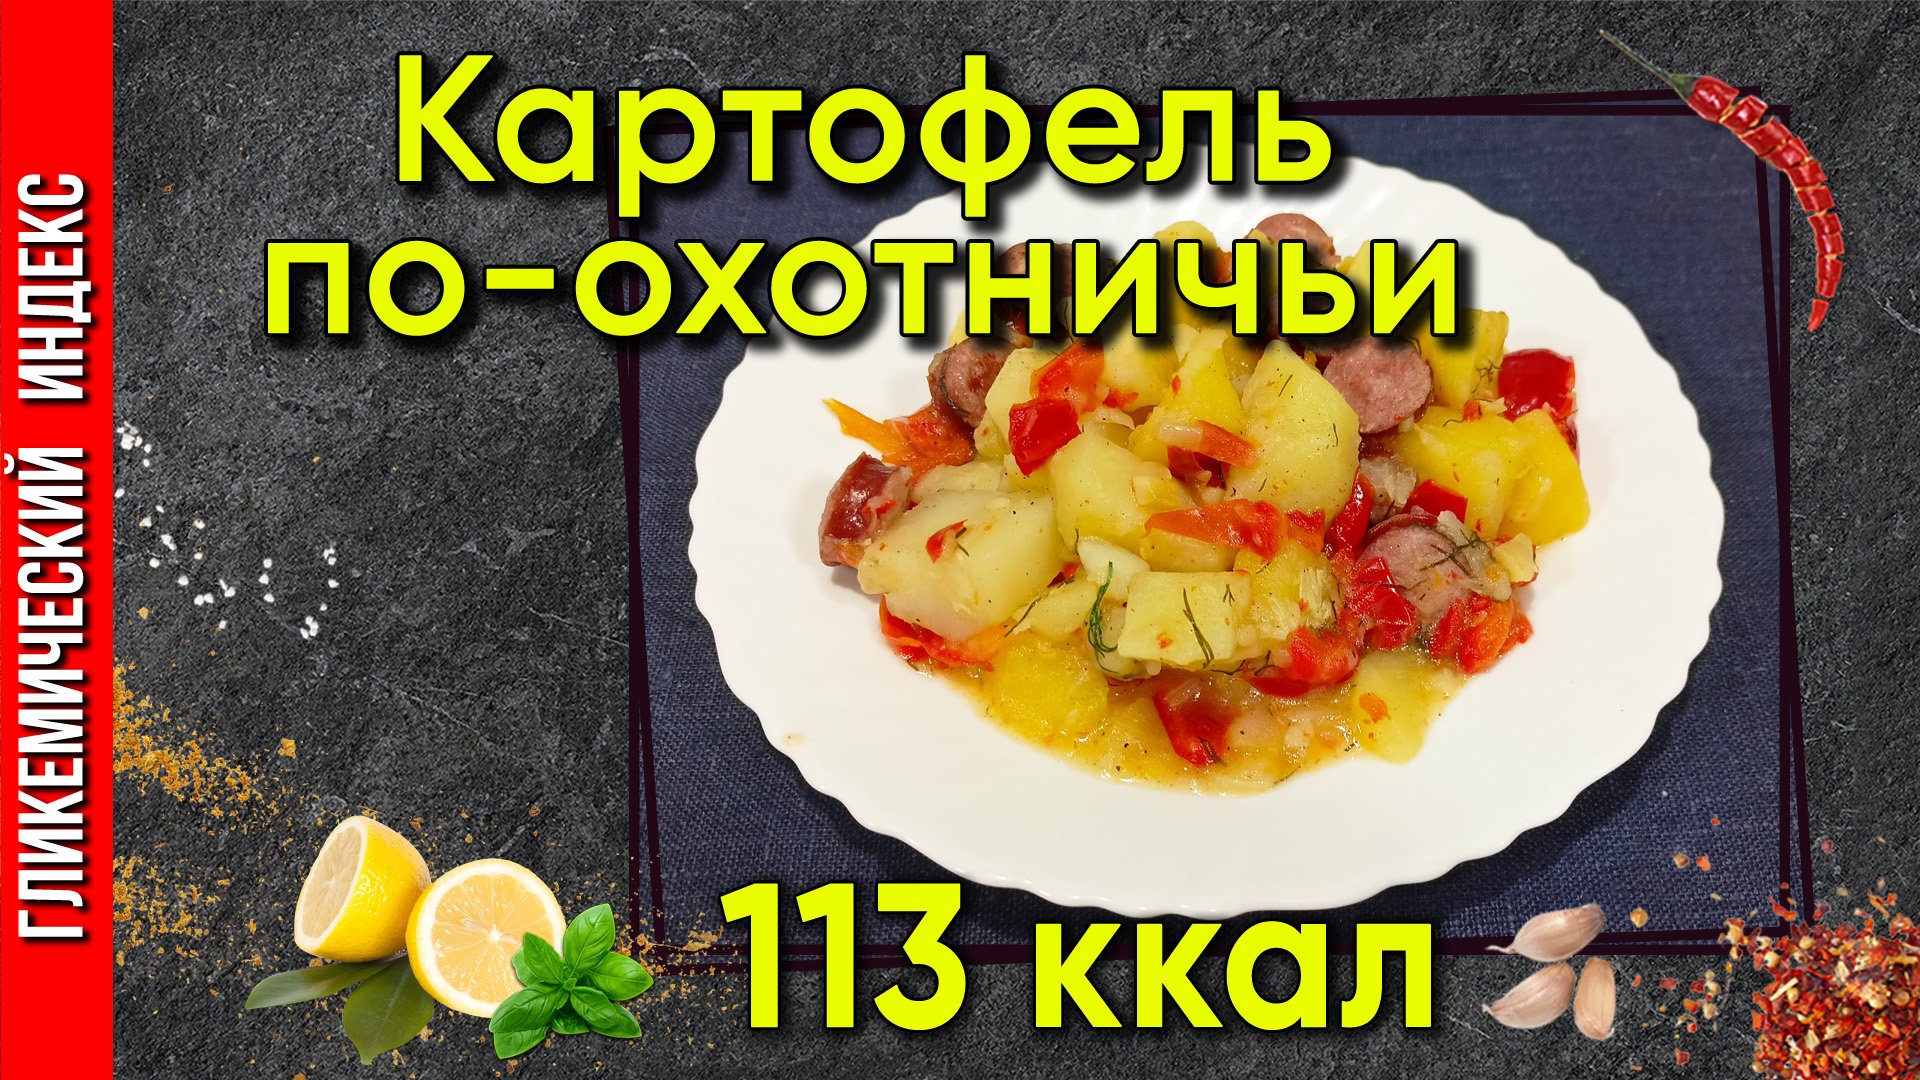 Картофель по-охотничьи - Рецепт вкусного ужина в мультиварке